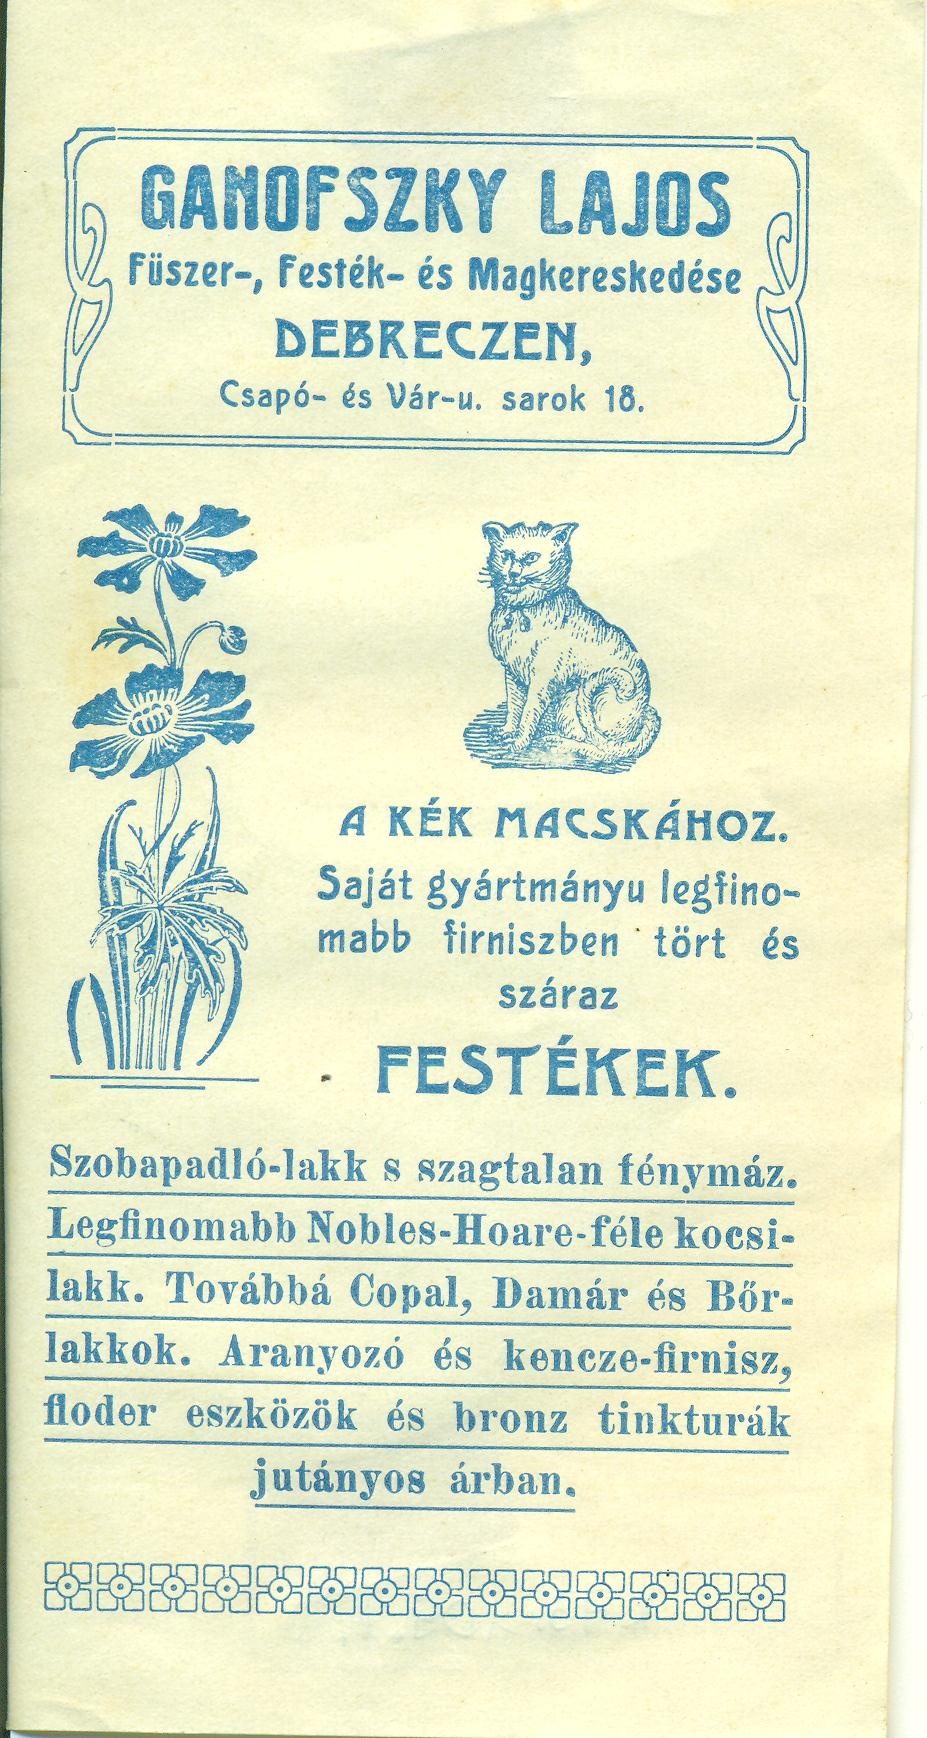 Ganofszky Lajos Fűszer-, Festék- és Magánkereskedése (Magyar Kereskedelmi és Vendéglátóipari Múzeum CC BY-NC-SA)